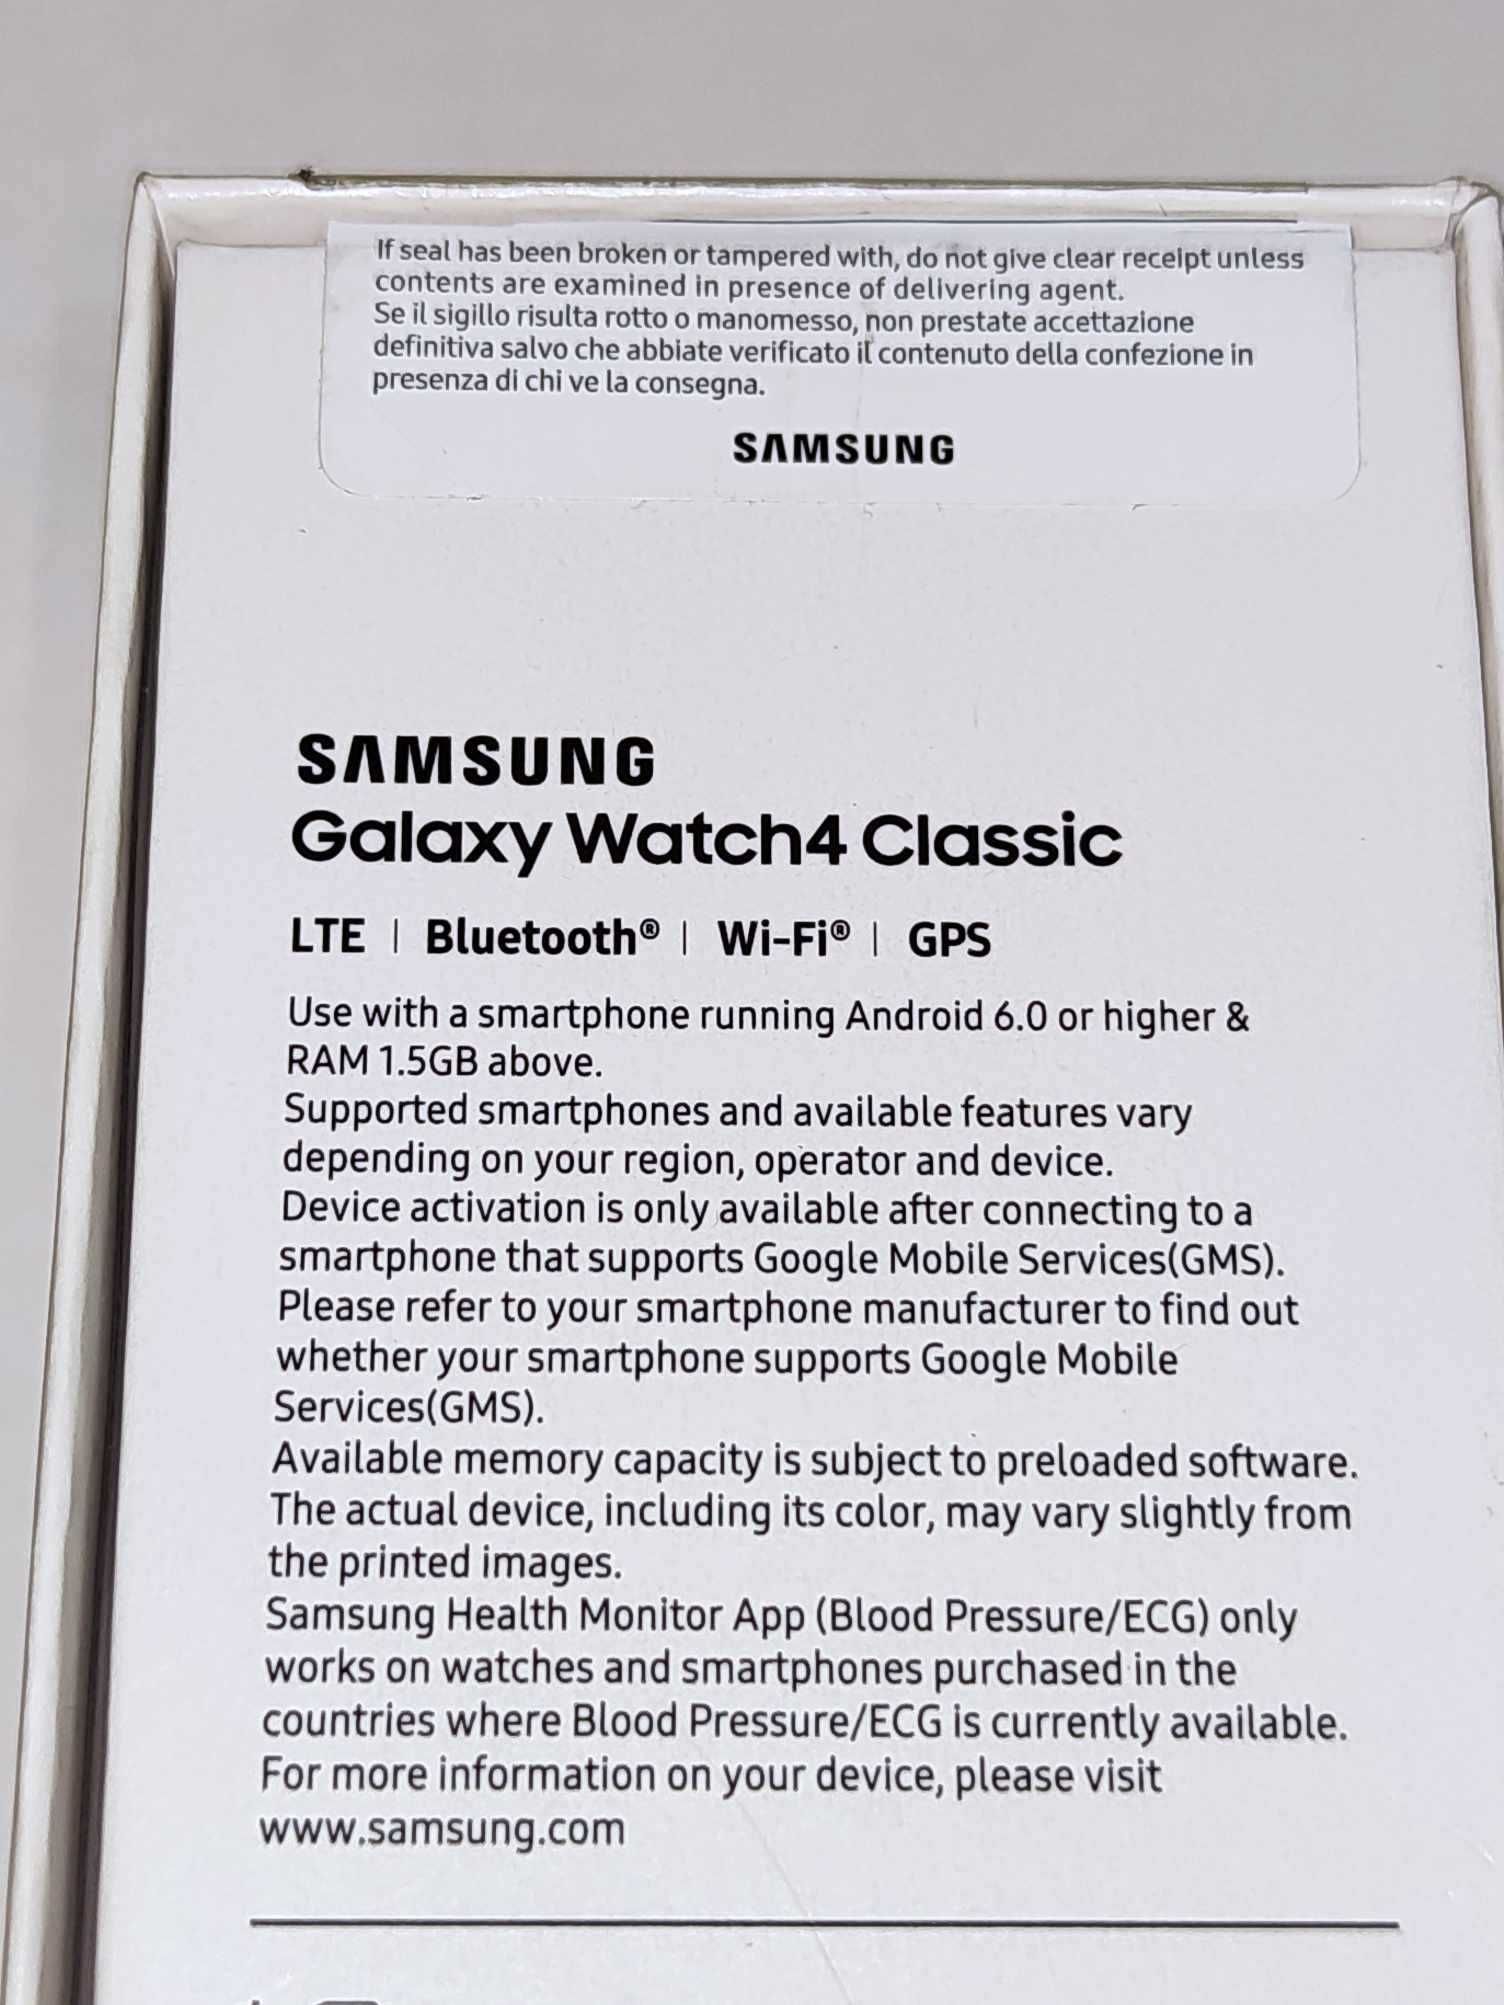 Samsung Galaxy Watch 4 42mm LTE eSIM+
Galaxy Z Fold 4 5G 512GB Black